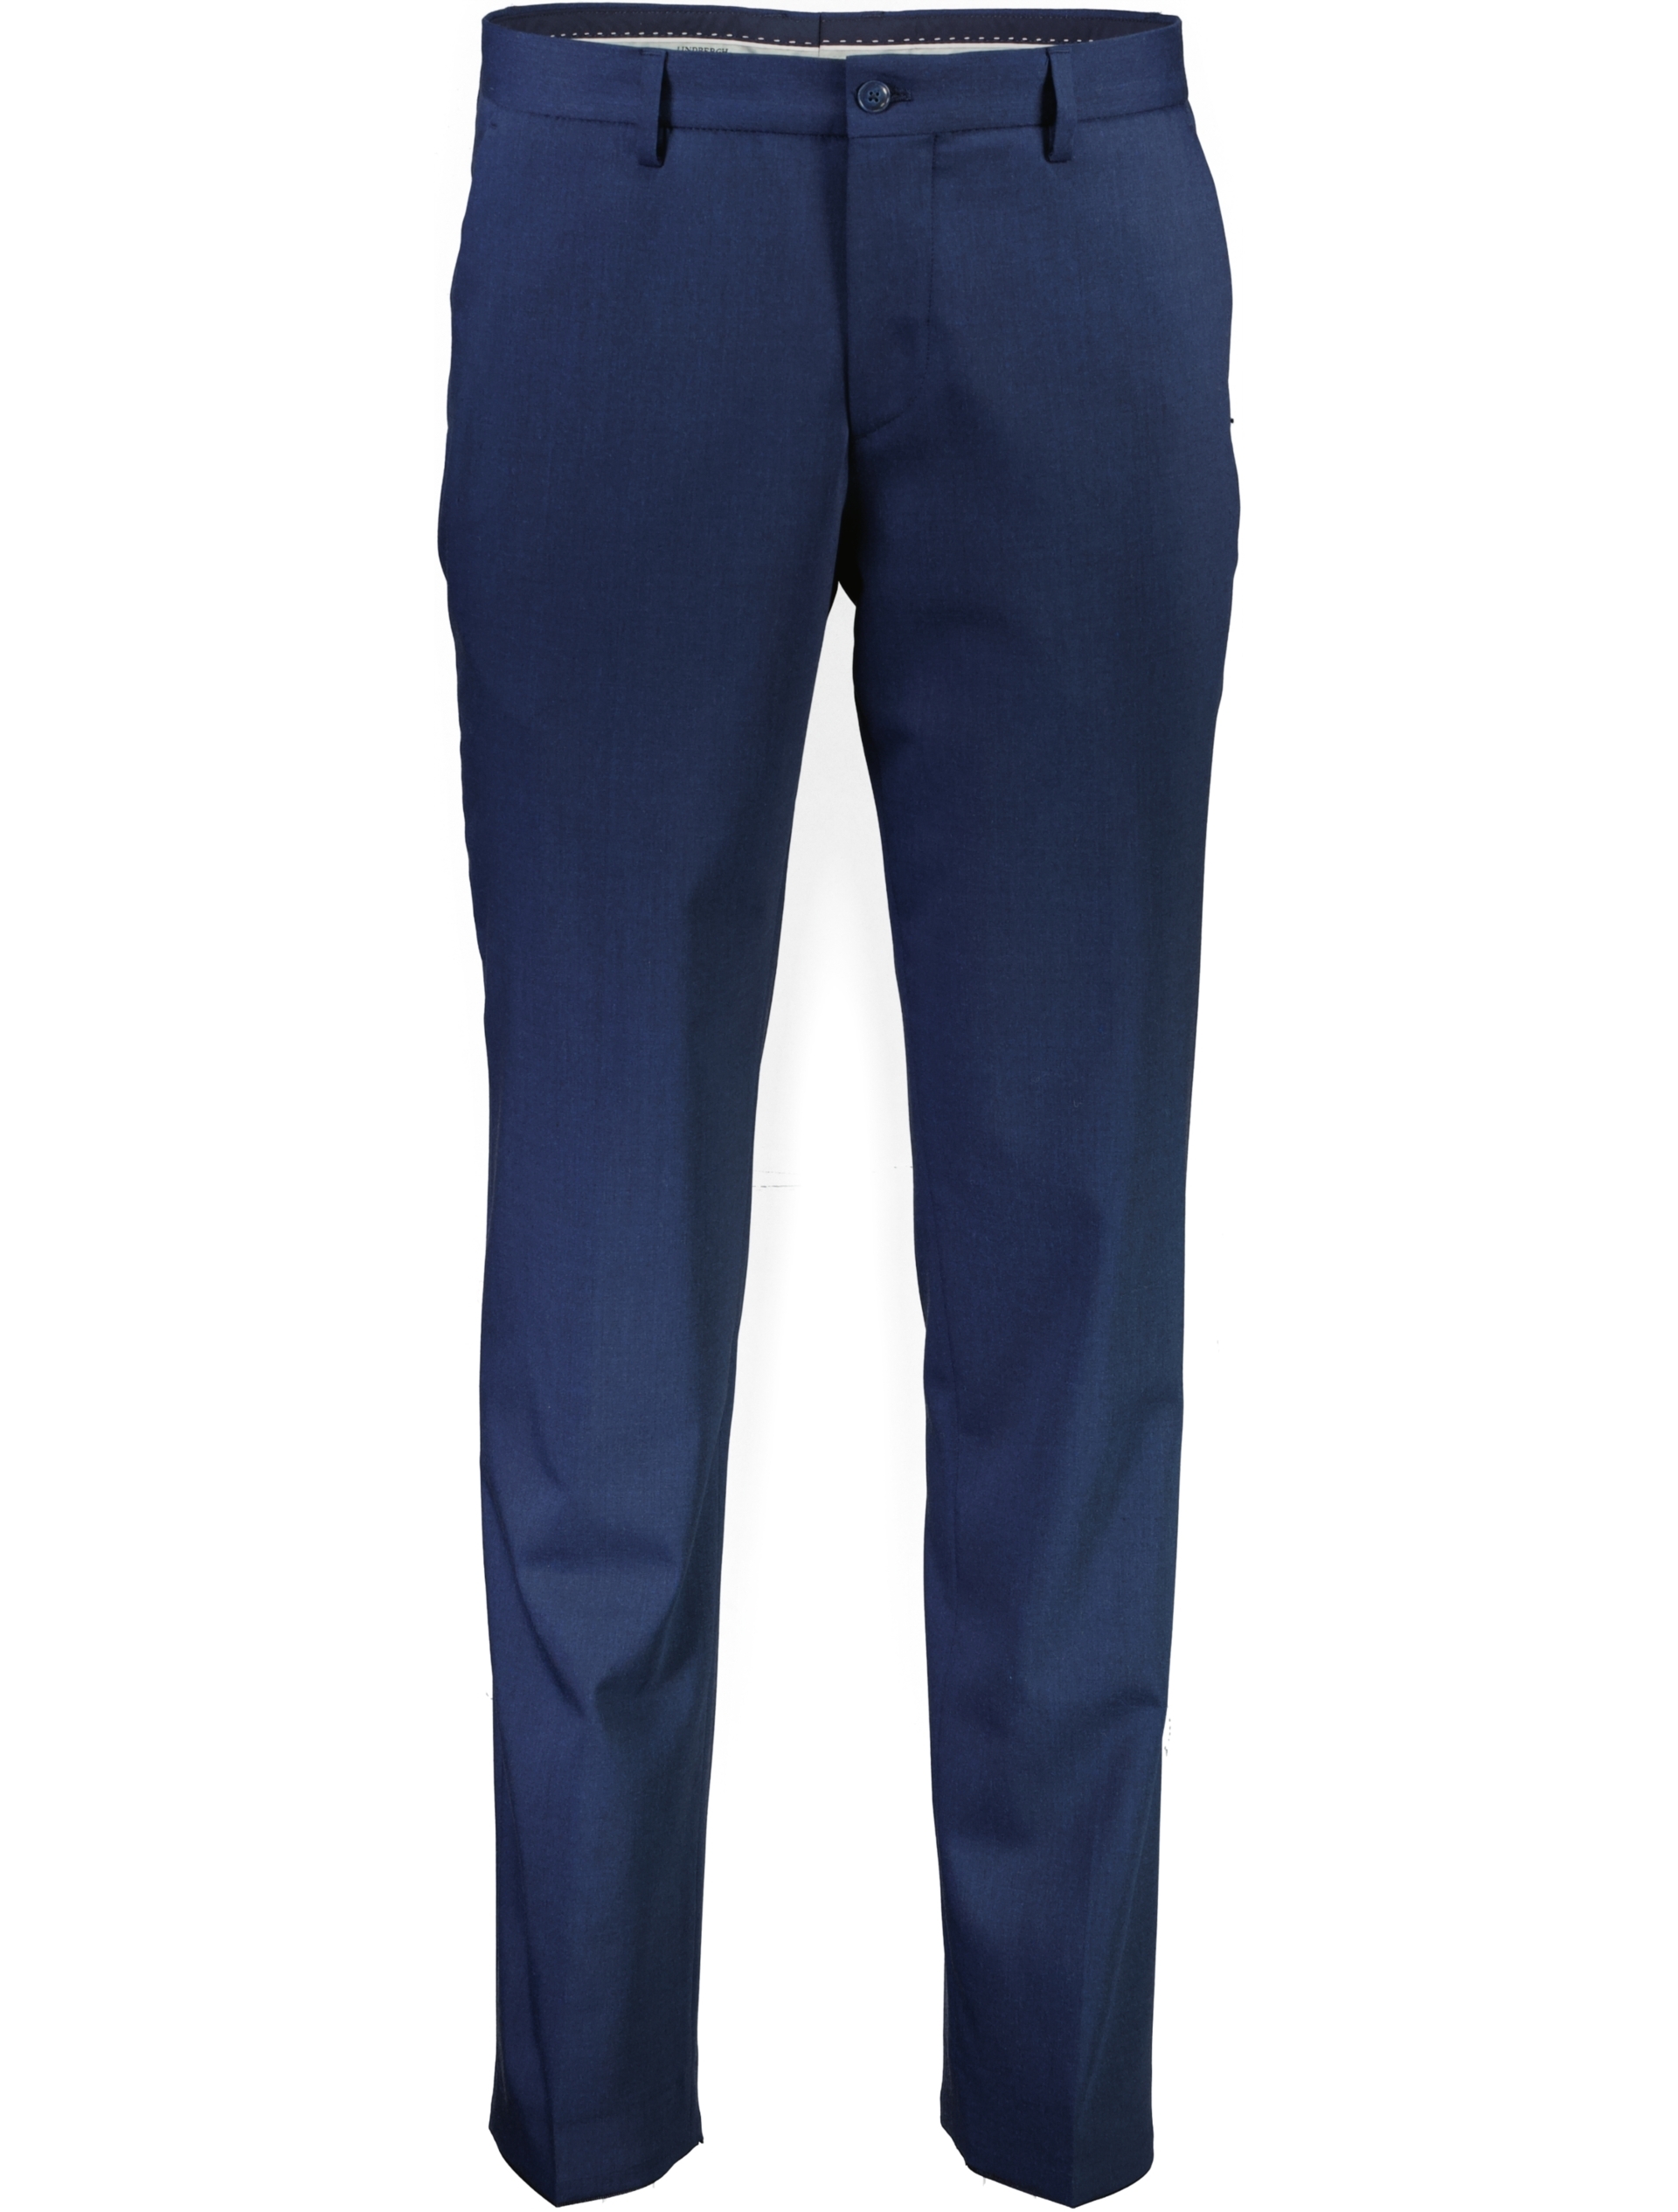 Lindbergh Suit pants blue / mid navy mel